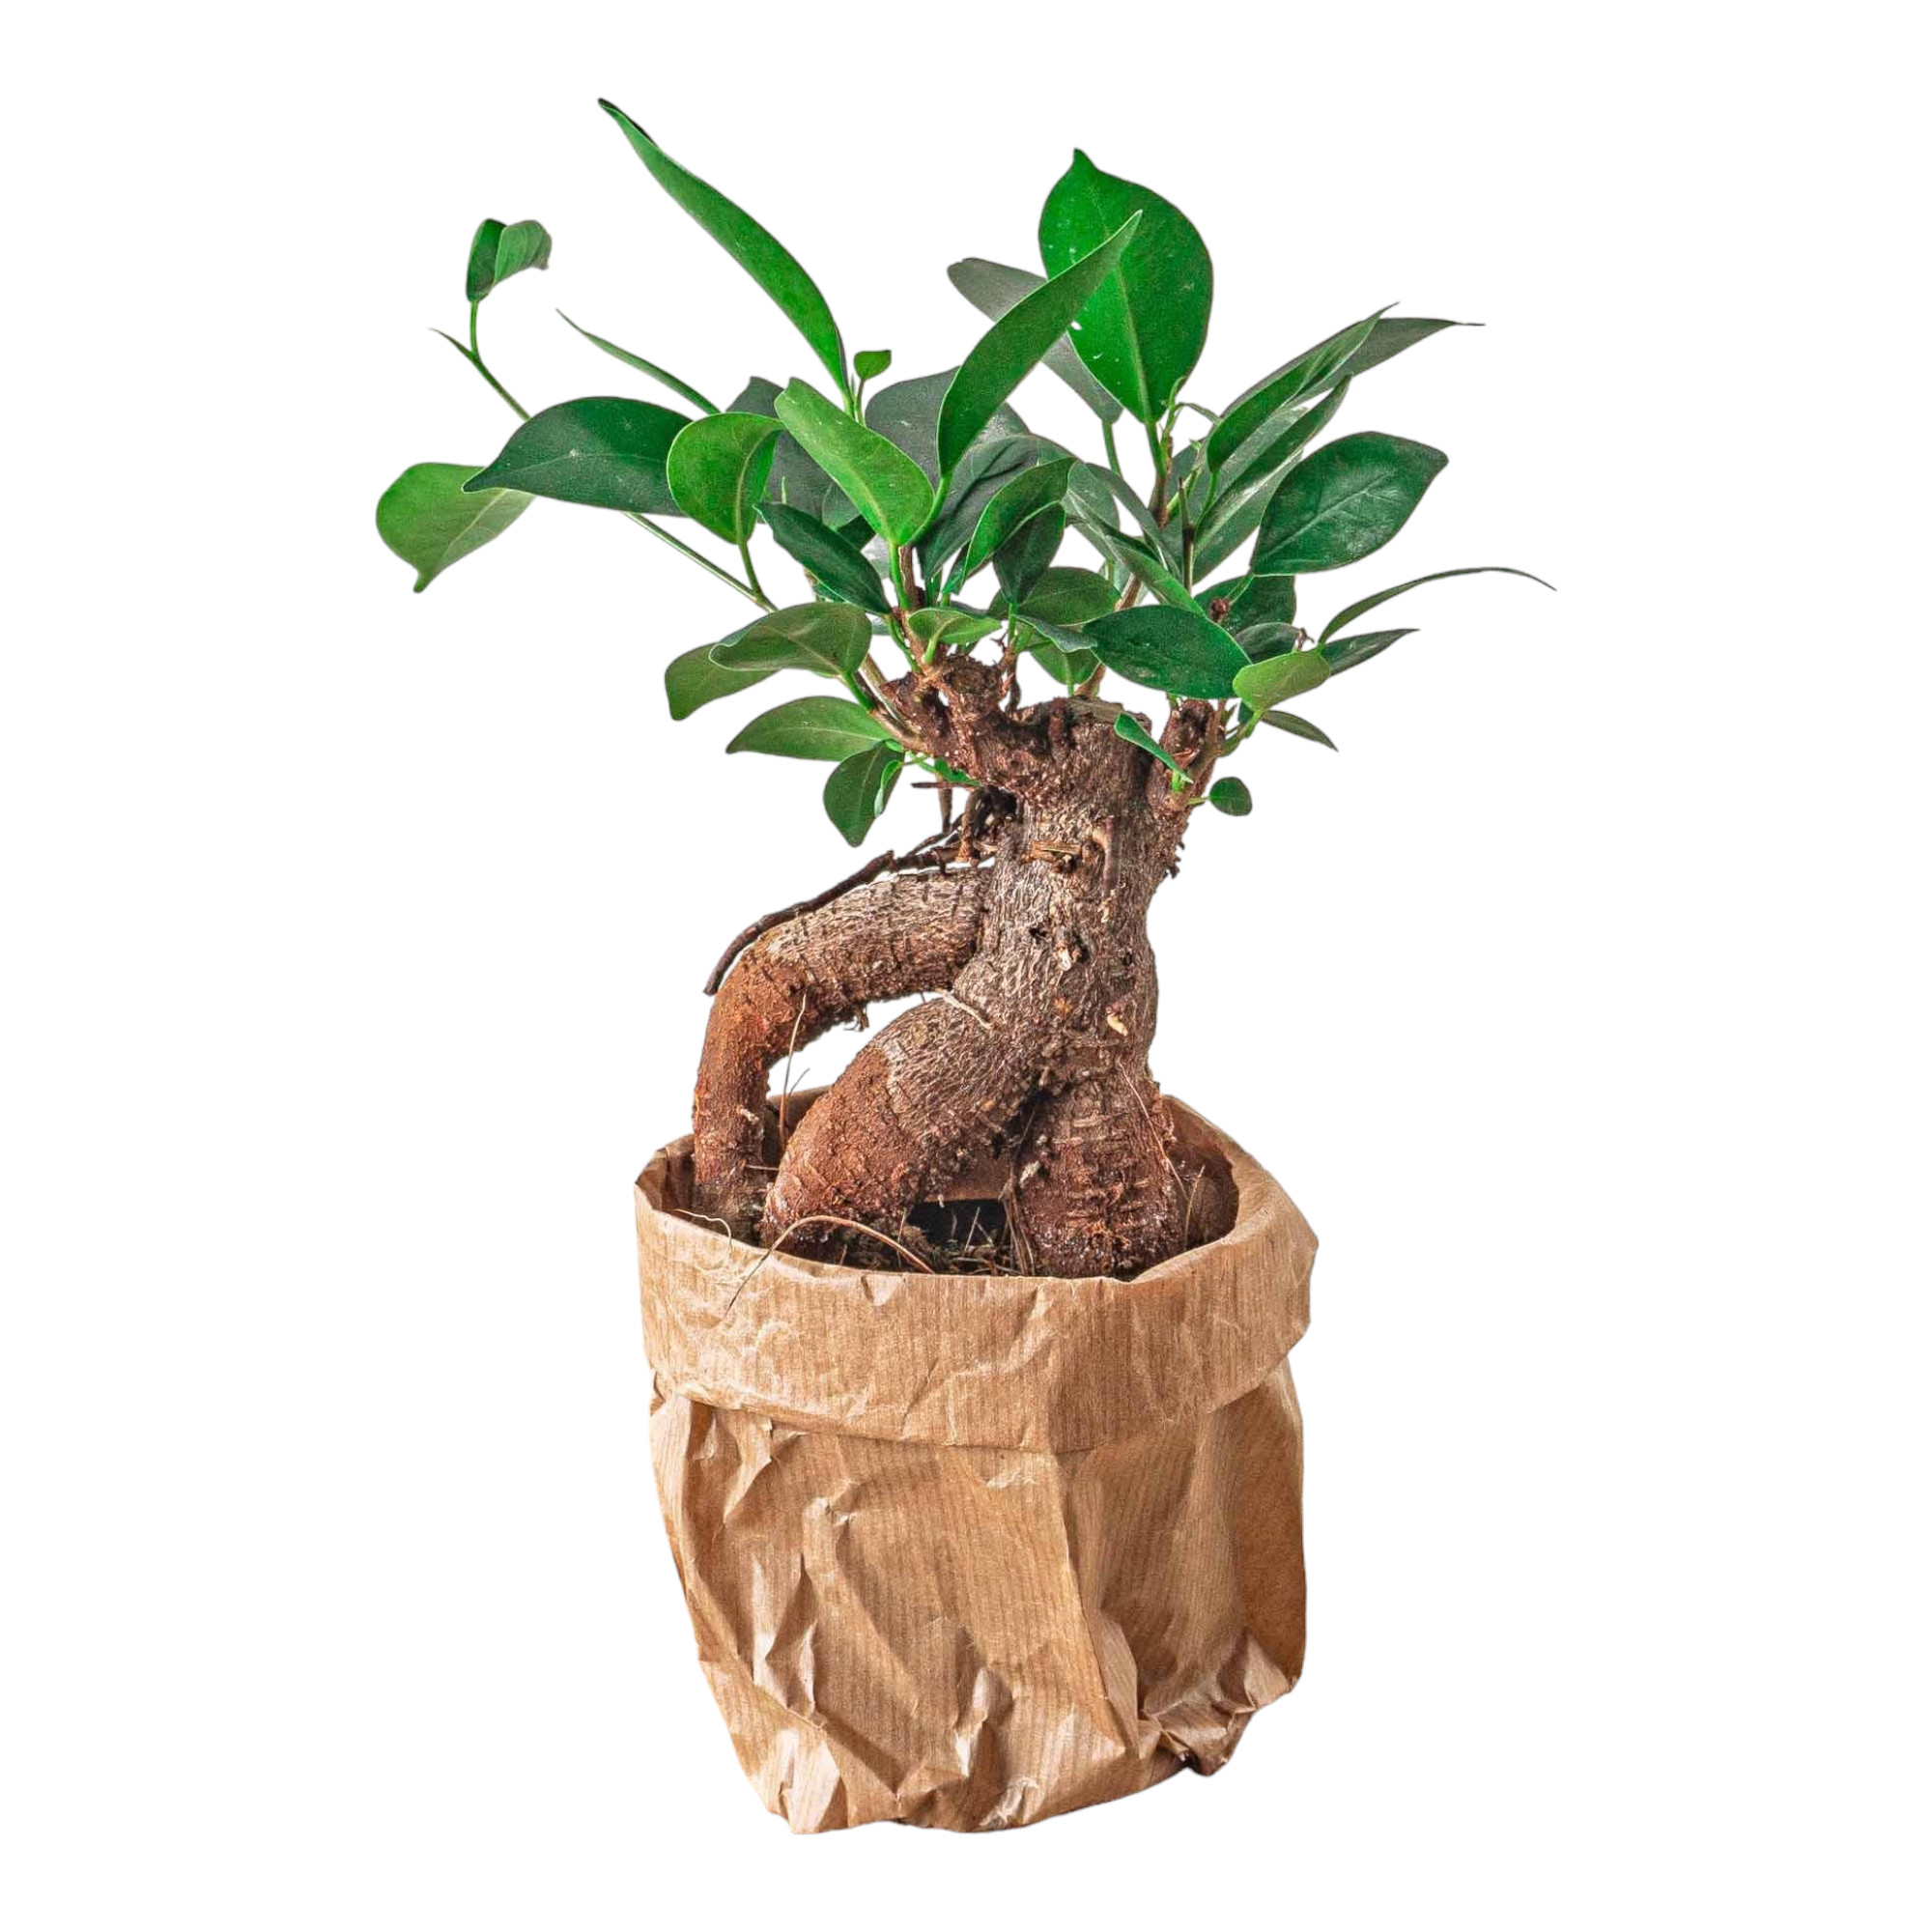 Plante d'intérieur - ficus microcarpa ginseng bonsai pour terrarium 16cm